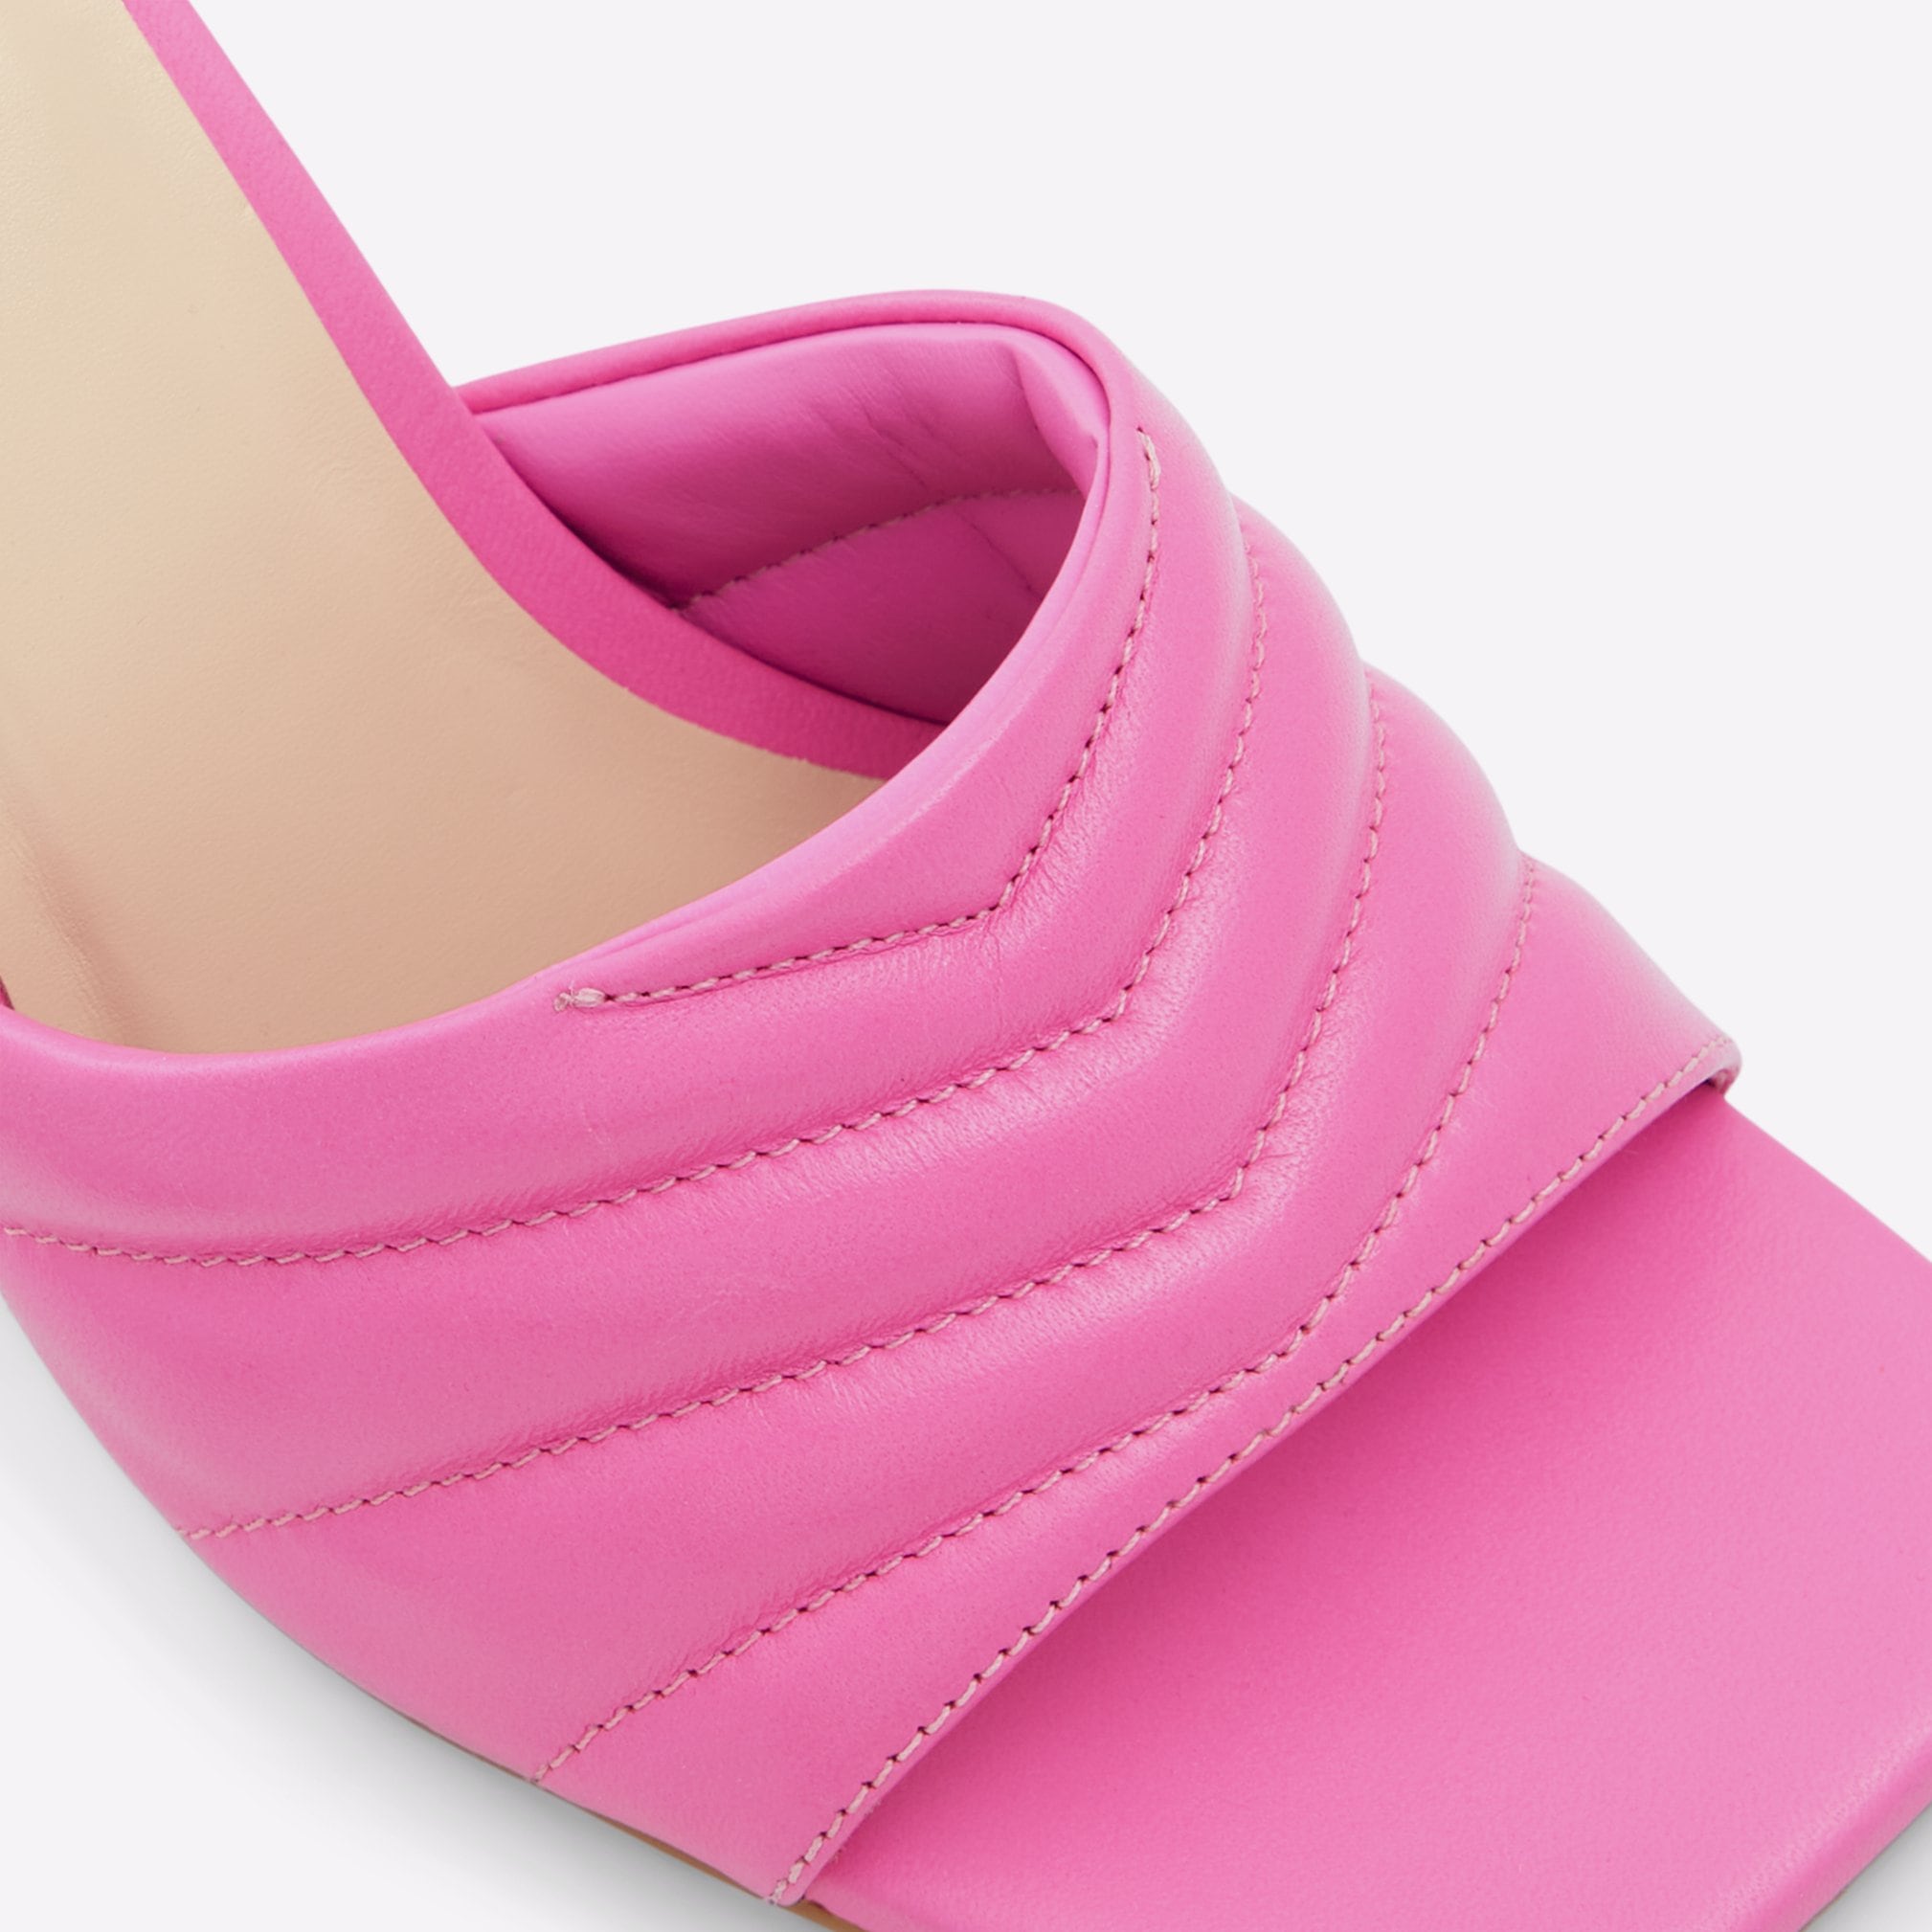 Daniellita Women Shoes - Fuchsia - ALDO KSA